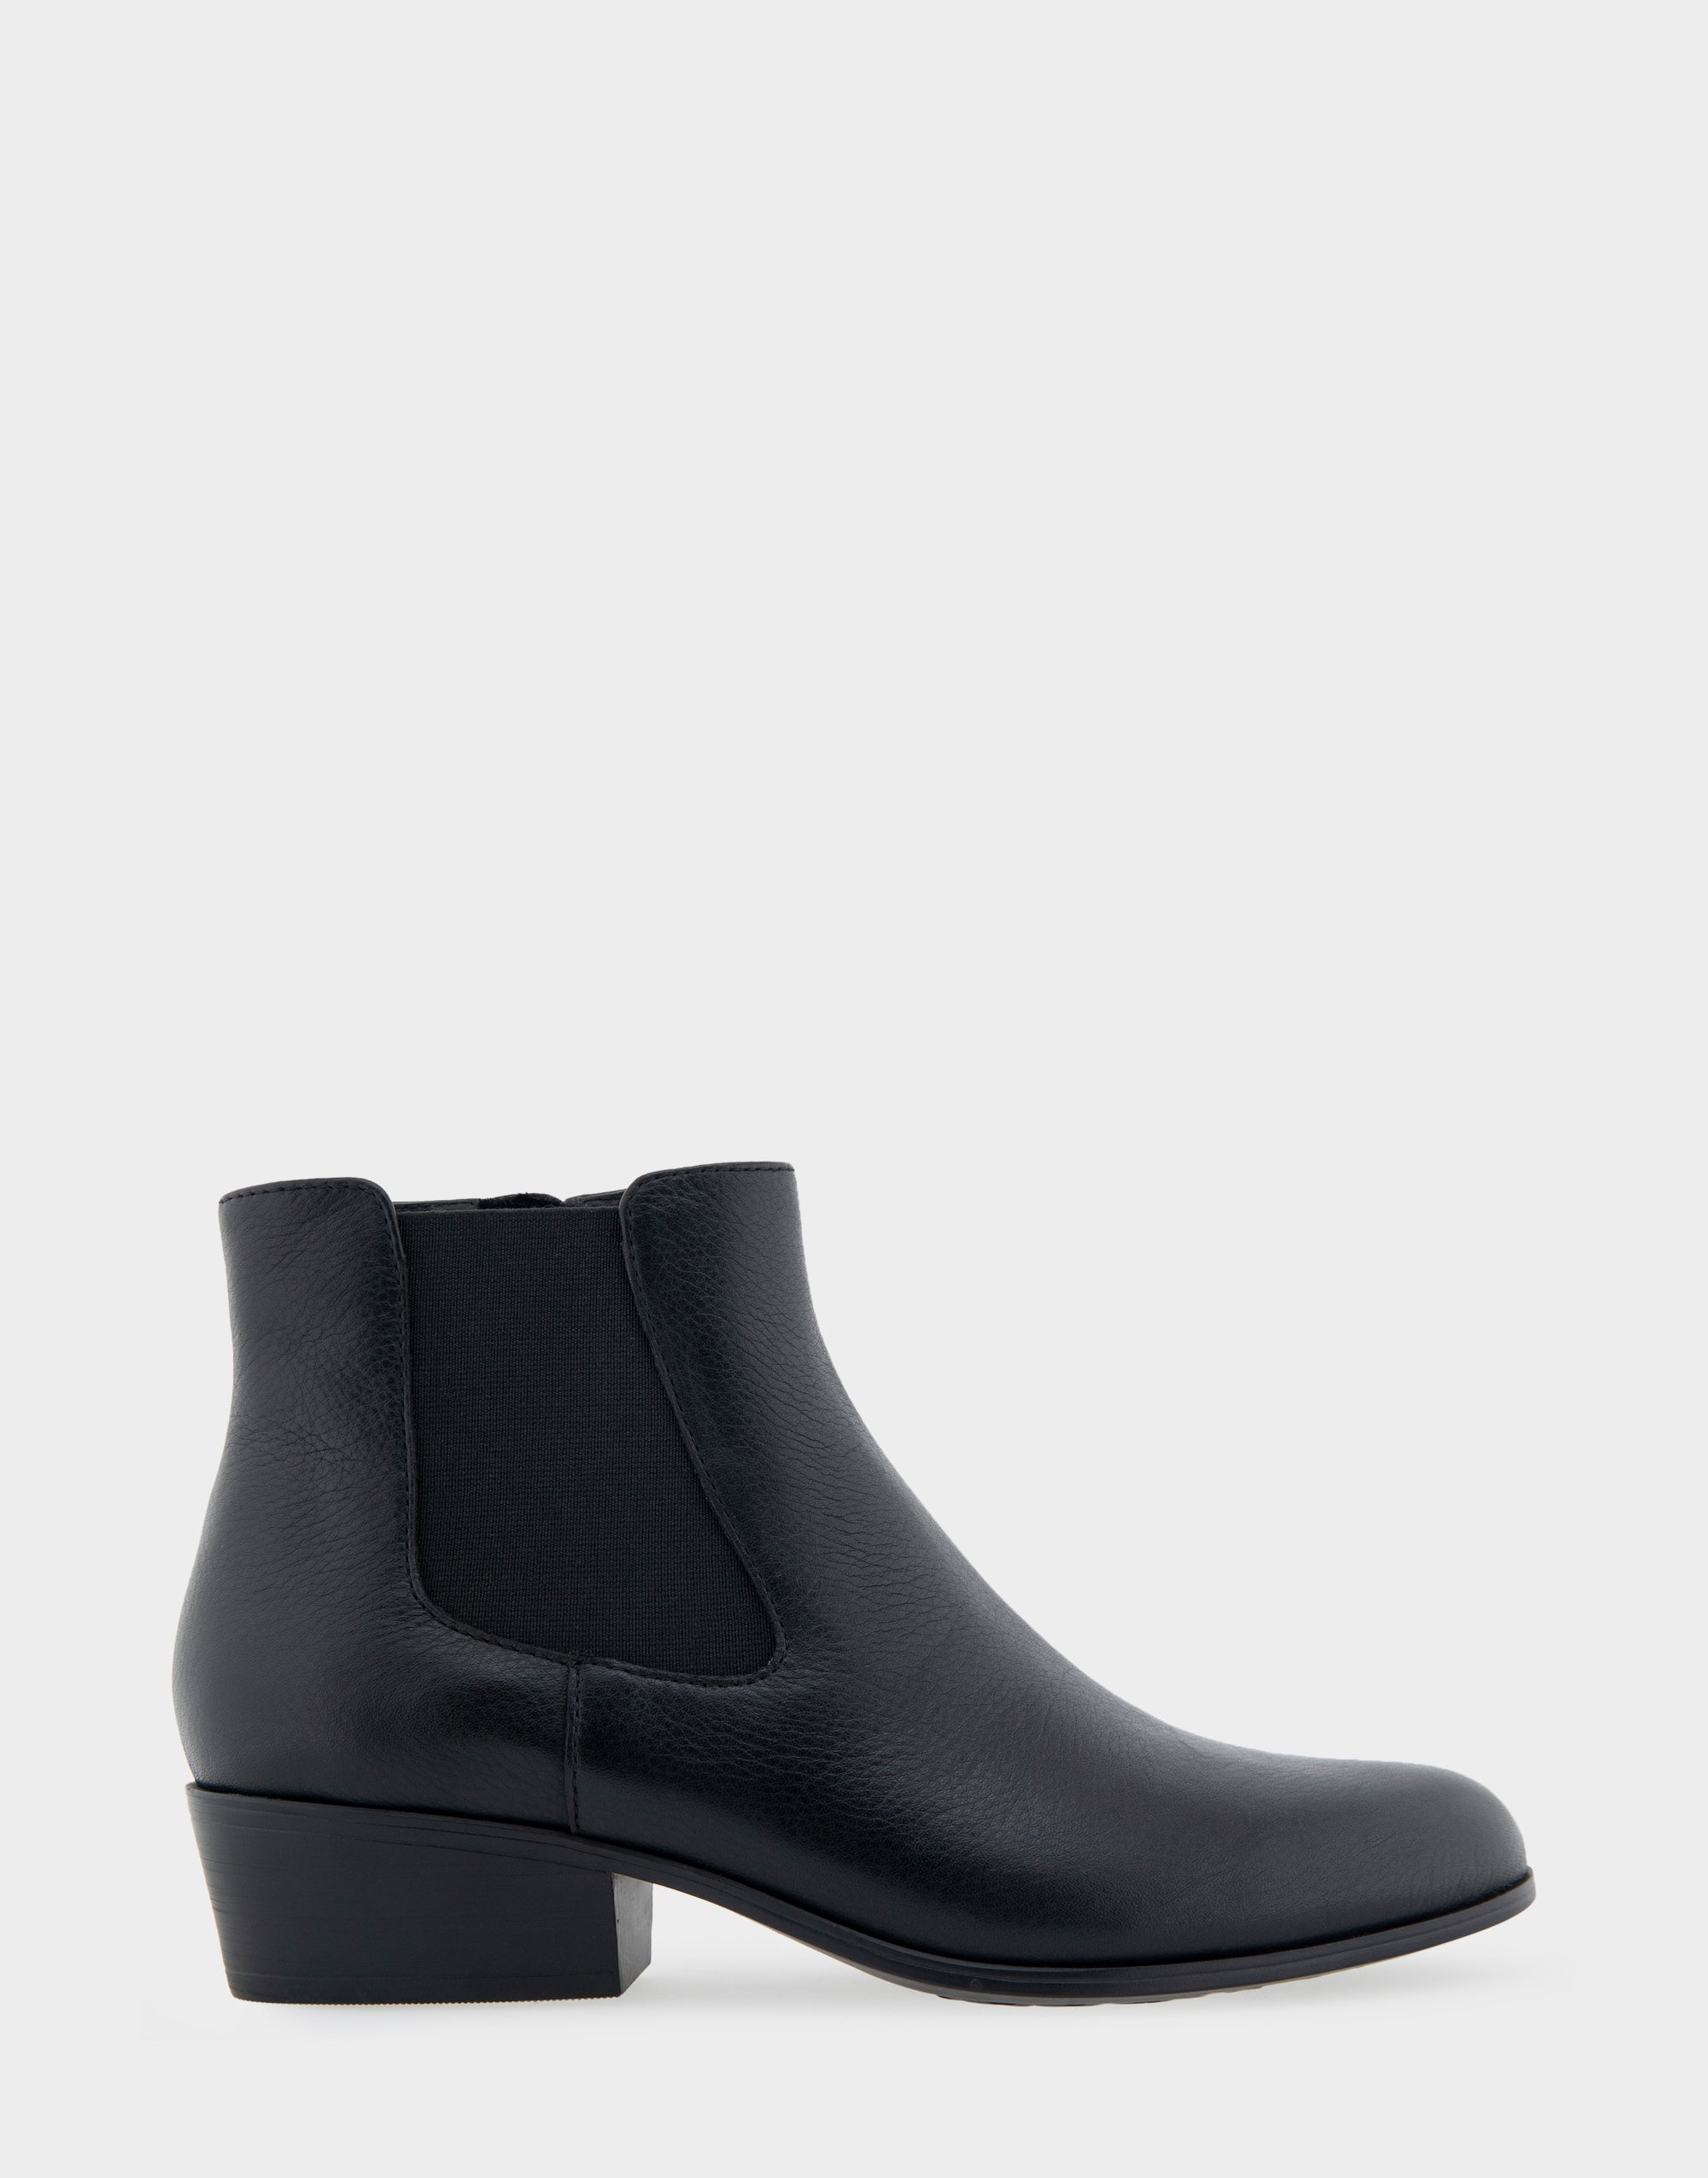 Cerros Black Genuine Leather Ankle Boot – Aerosoles